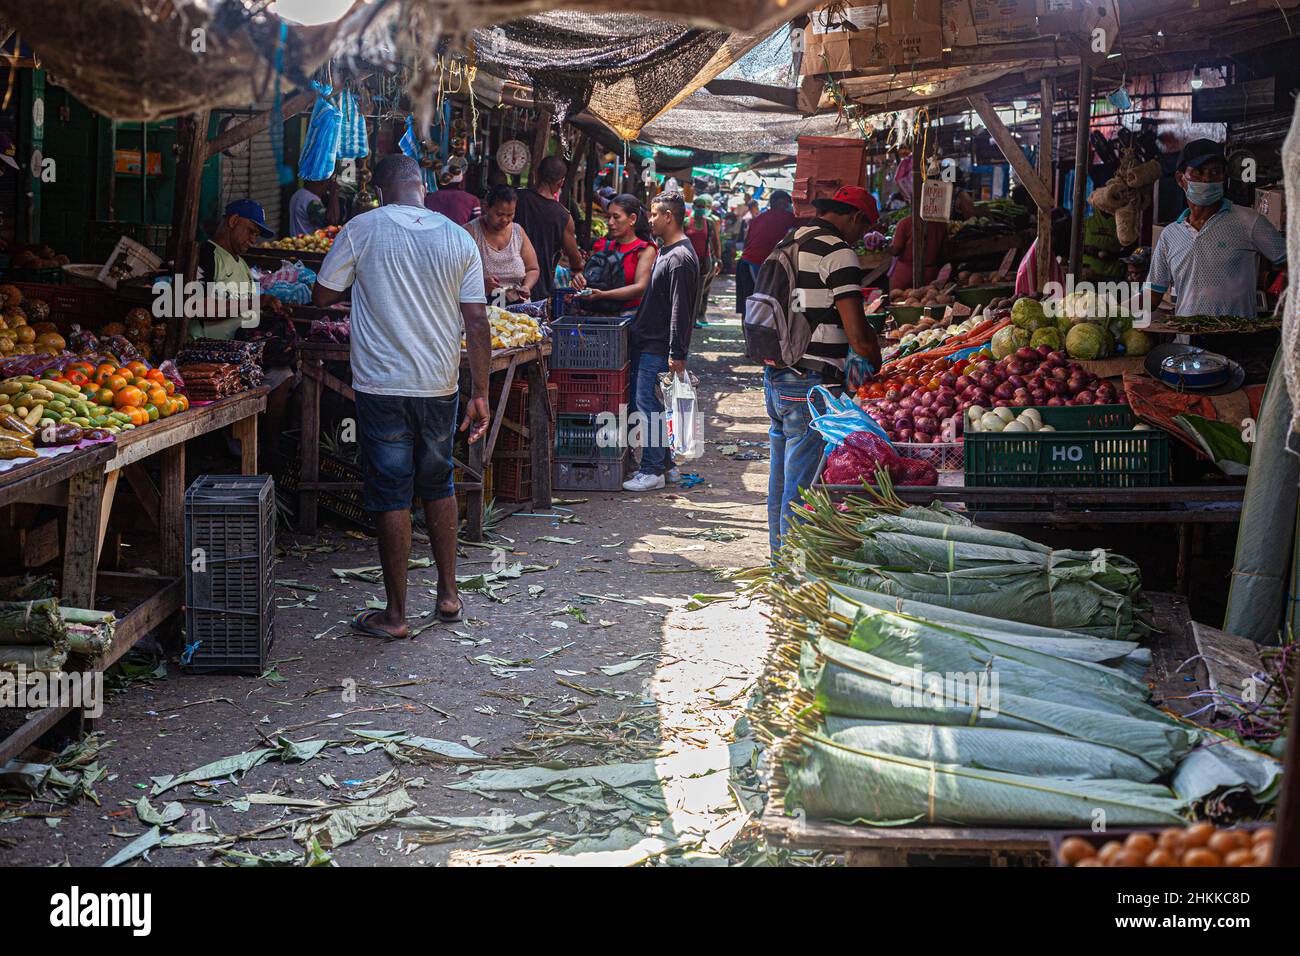 Straßenszene auf dem öffentlichen Markt Mercado Bazurto, Cartagena de Indias, Kolumbien. Stockfoto